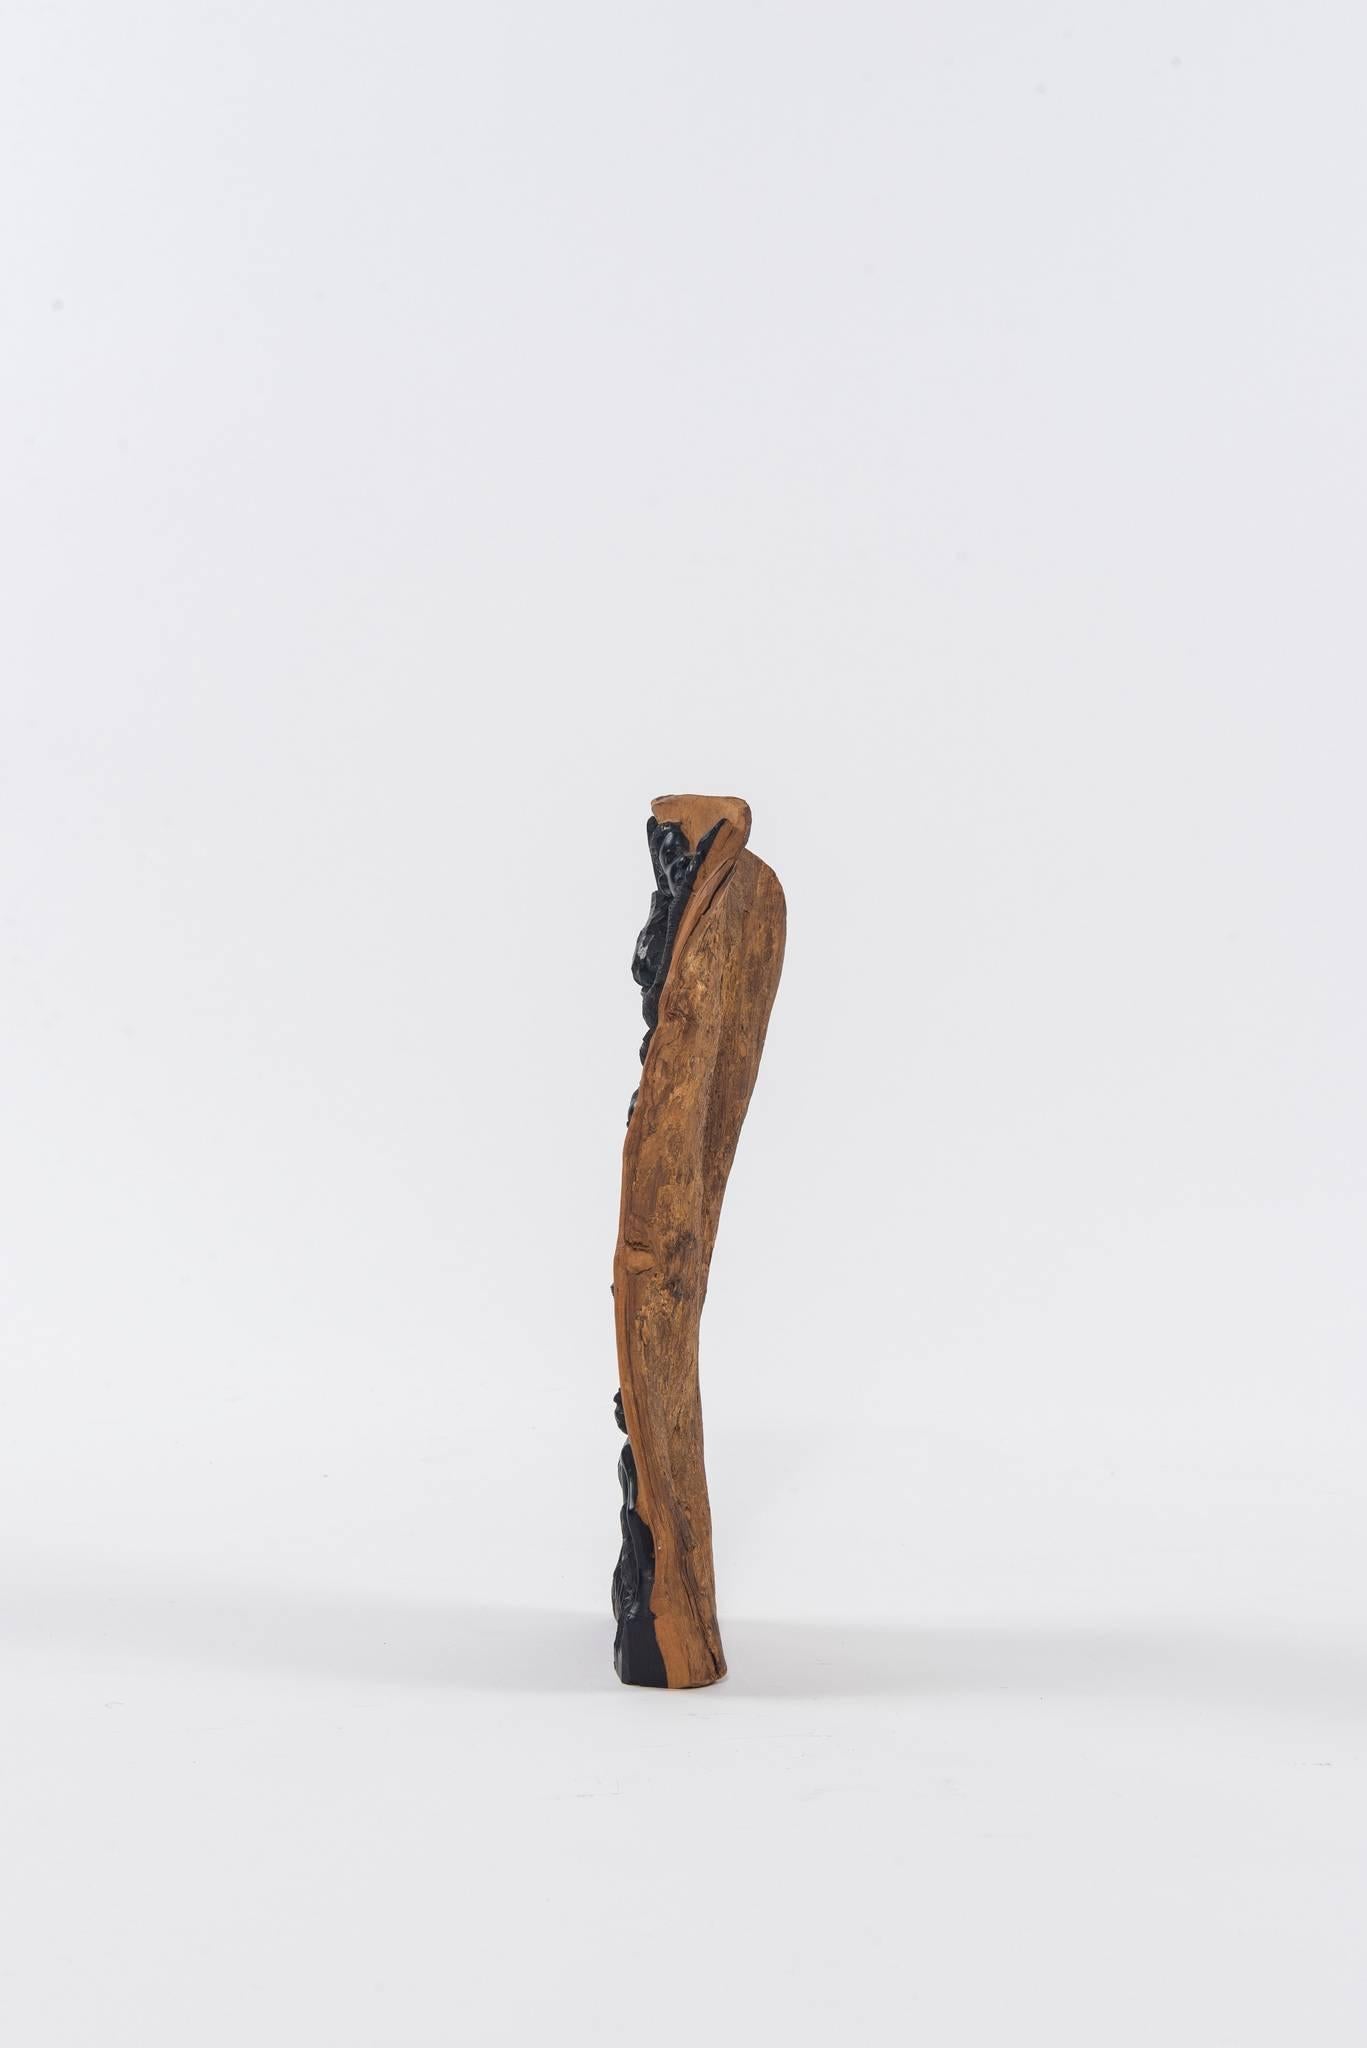 Ein schönes zeitgenössisches Sammlerstück der Makonde Ebenholz Lebensbaum Kunstschnitzerei mit unglaublich detaillierten Holzschnitzerei.